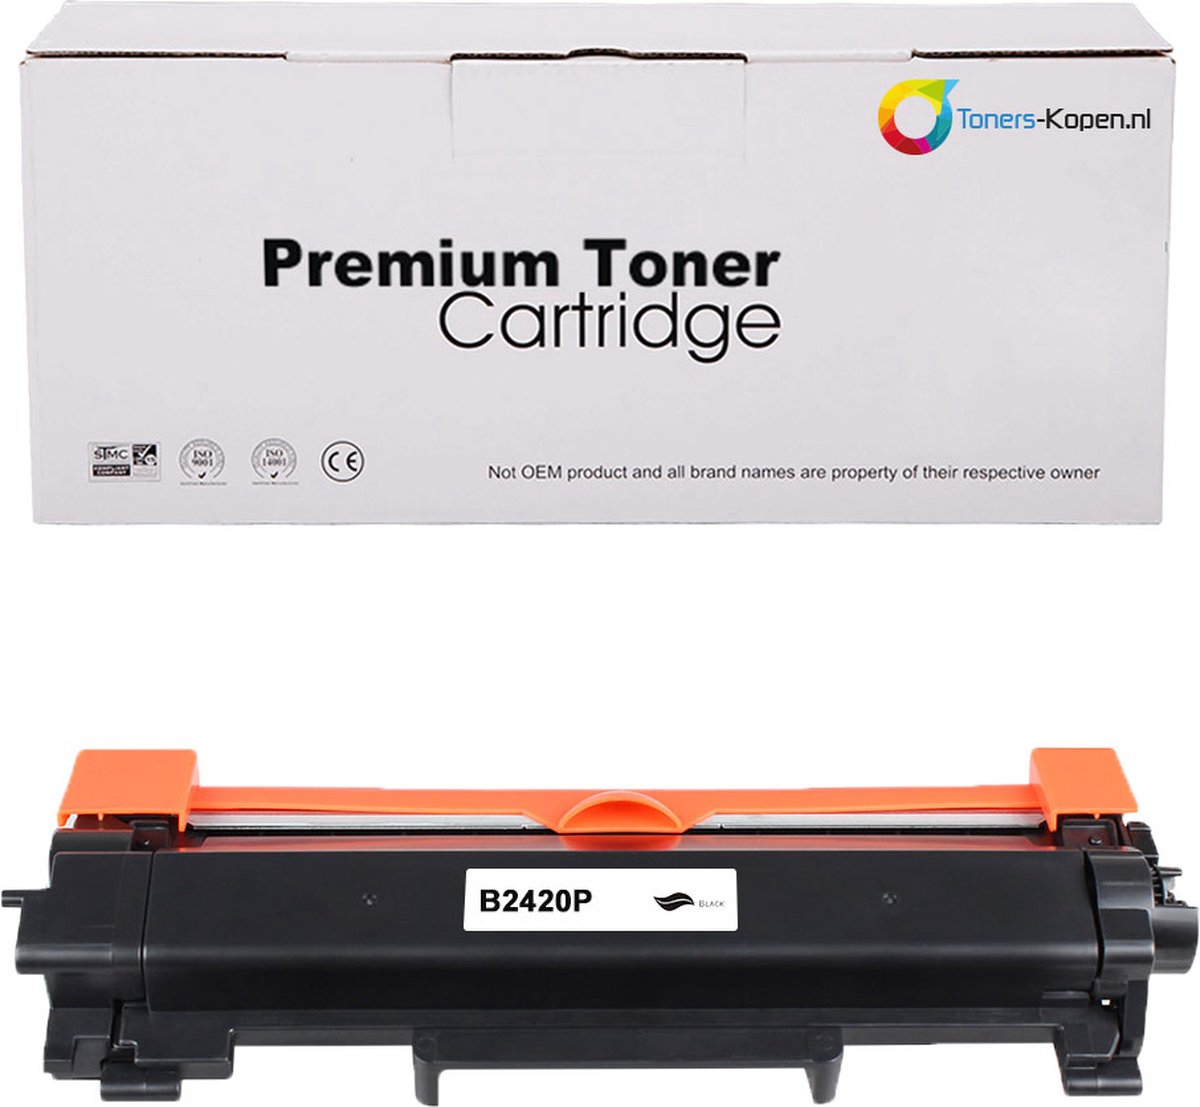 TN-2410, TN2410, HL-L2350 - compatible laser cartridge, toner for printers Brother  DCP-L2510D, L2530DW, HL-L2310D, L2350DW, L237 